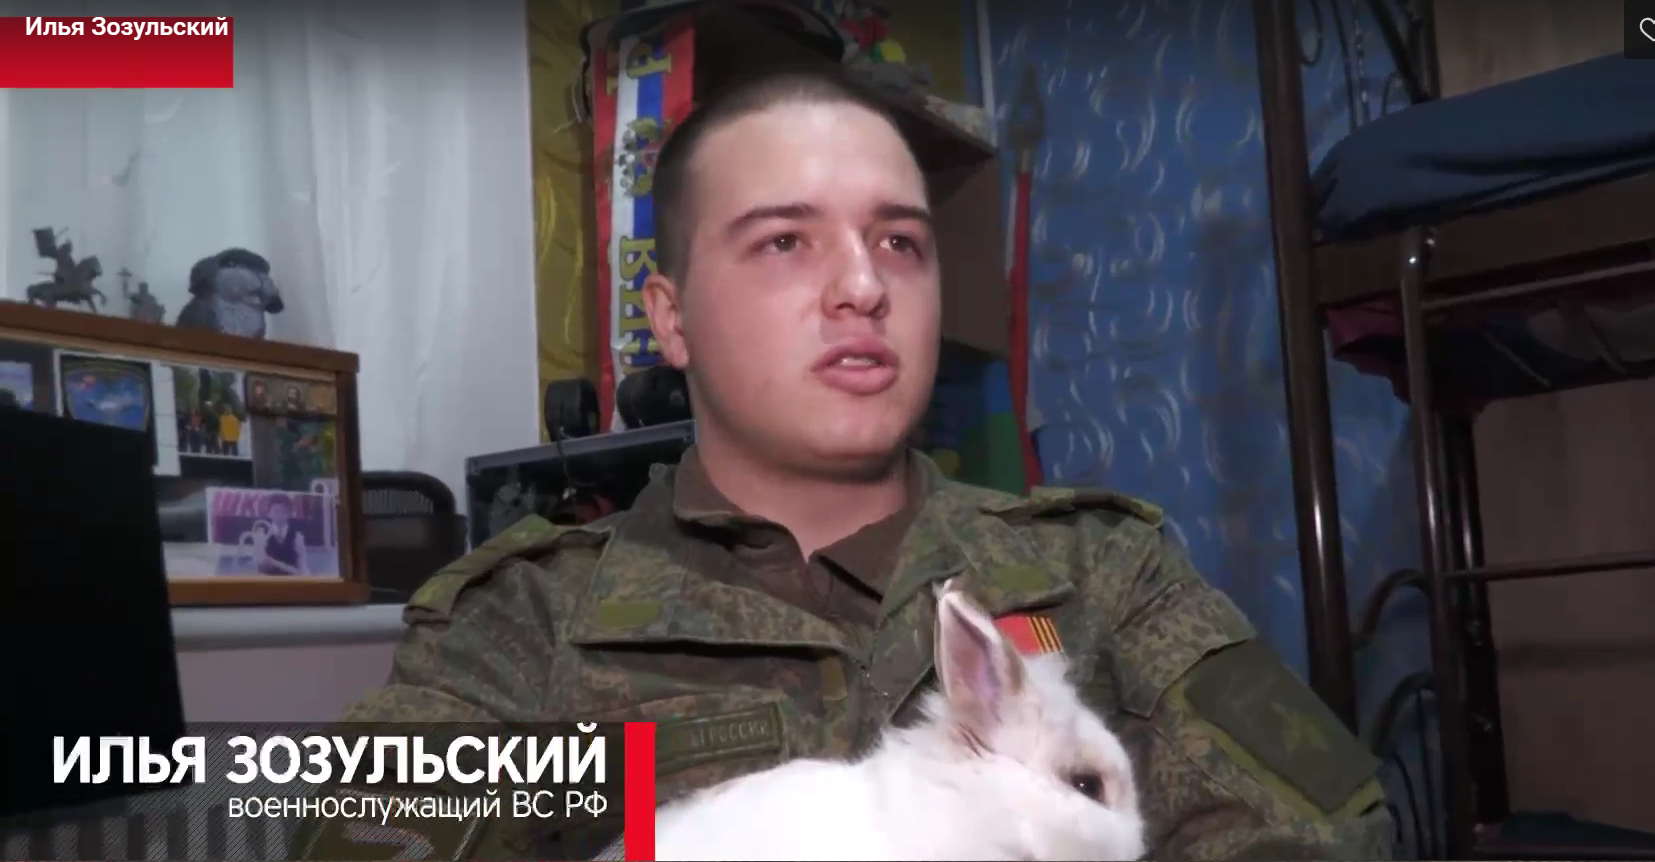 Спас жизни раненых товарищей: участник спецоперации из Крыма награжден медалью Жукова